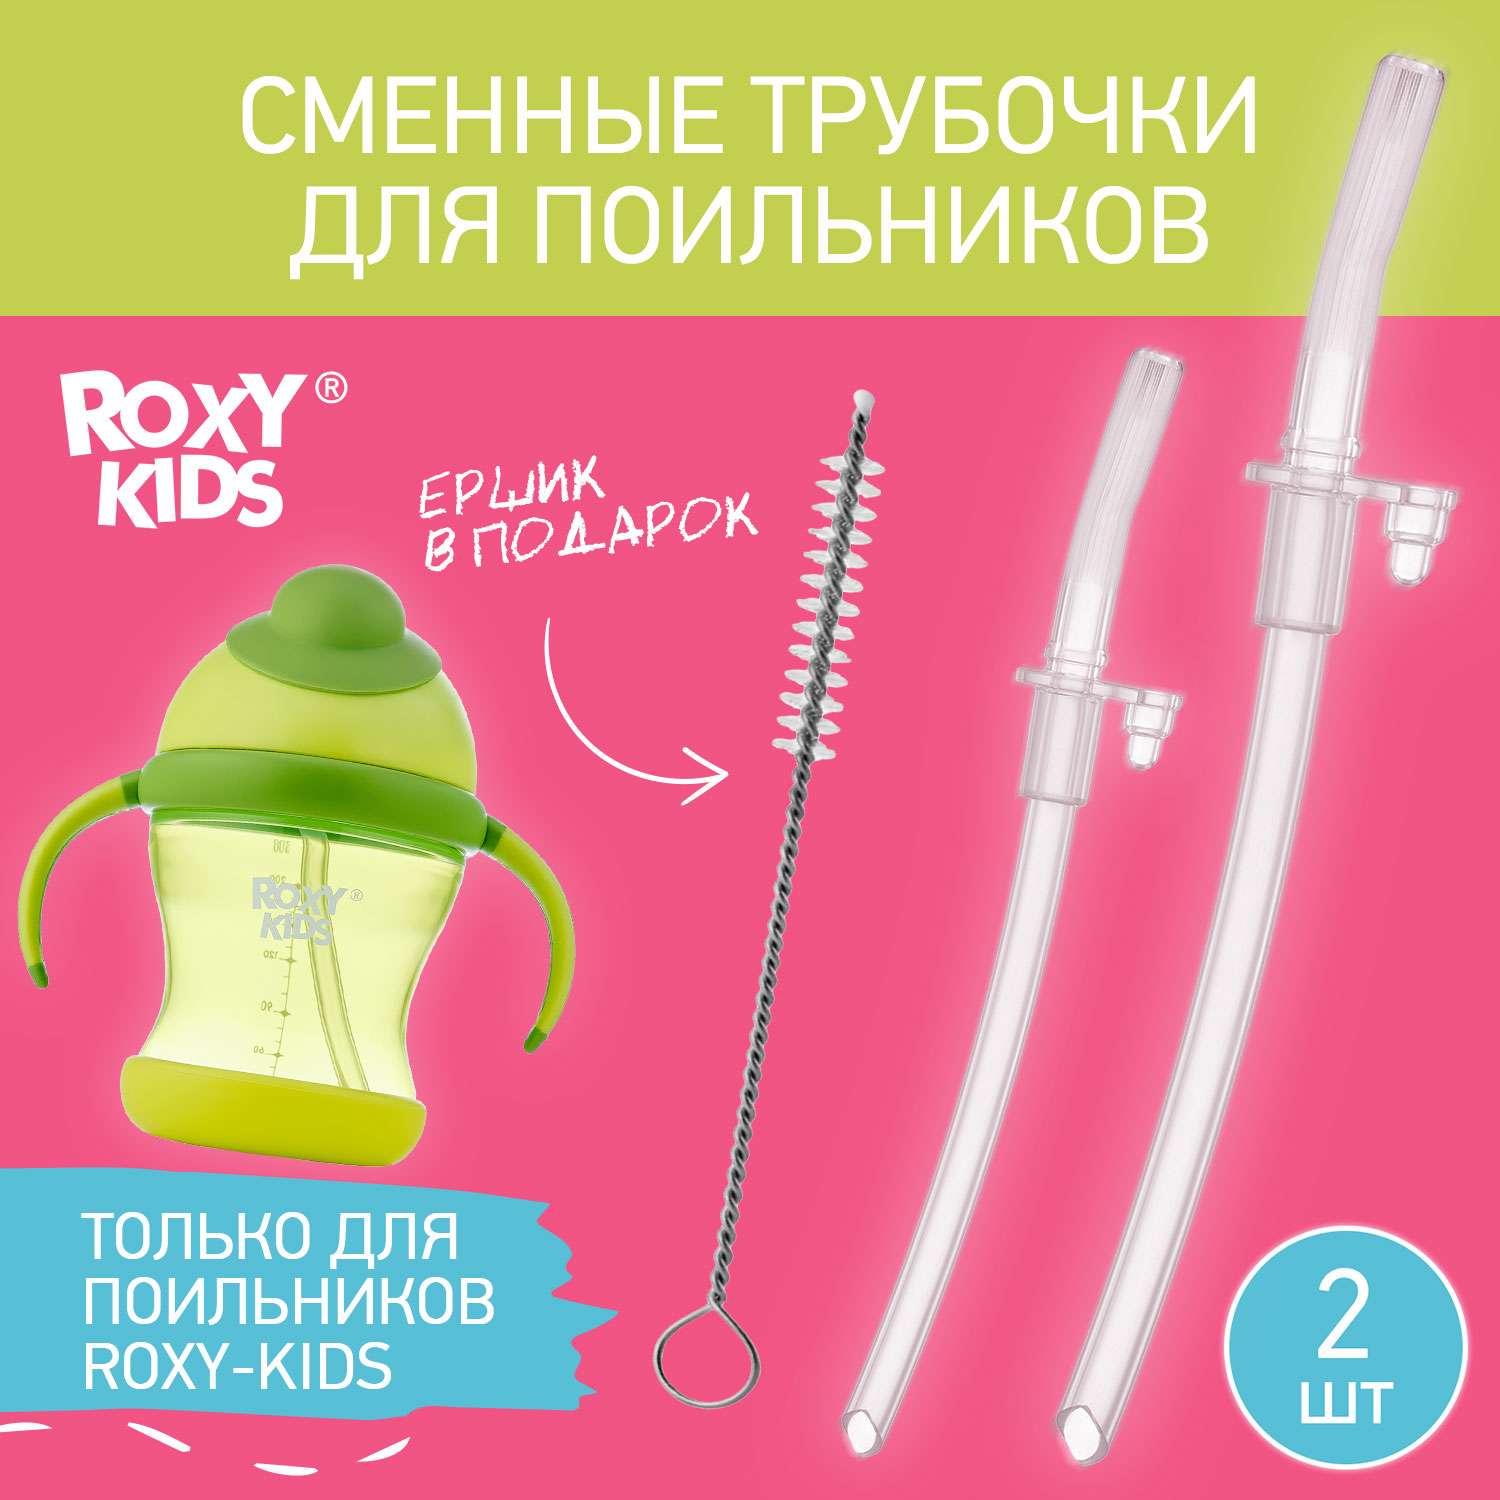 Набор сменных трубочек ROXY-KIDS для поильника Tube - фото 2